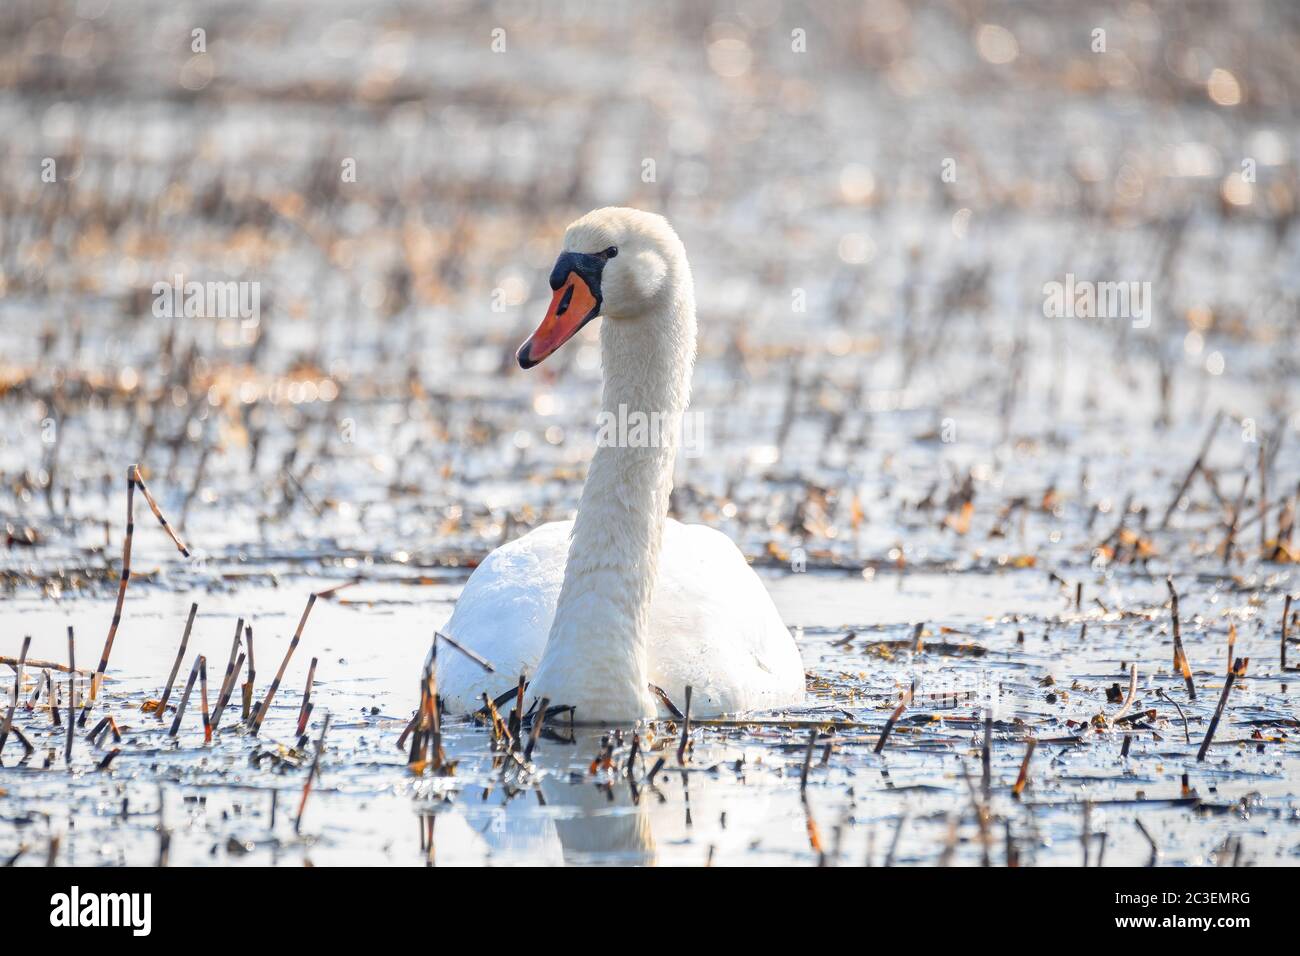 Wild bird mute swan in spring on pond Stock Photo